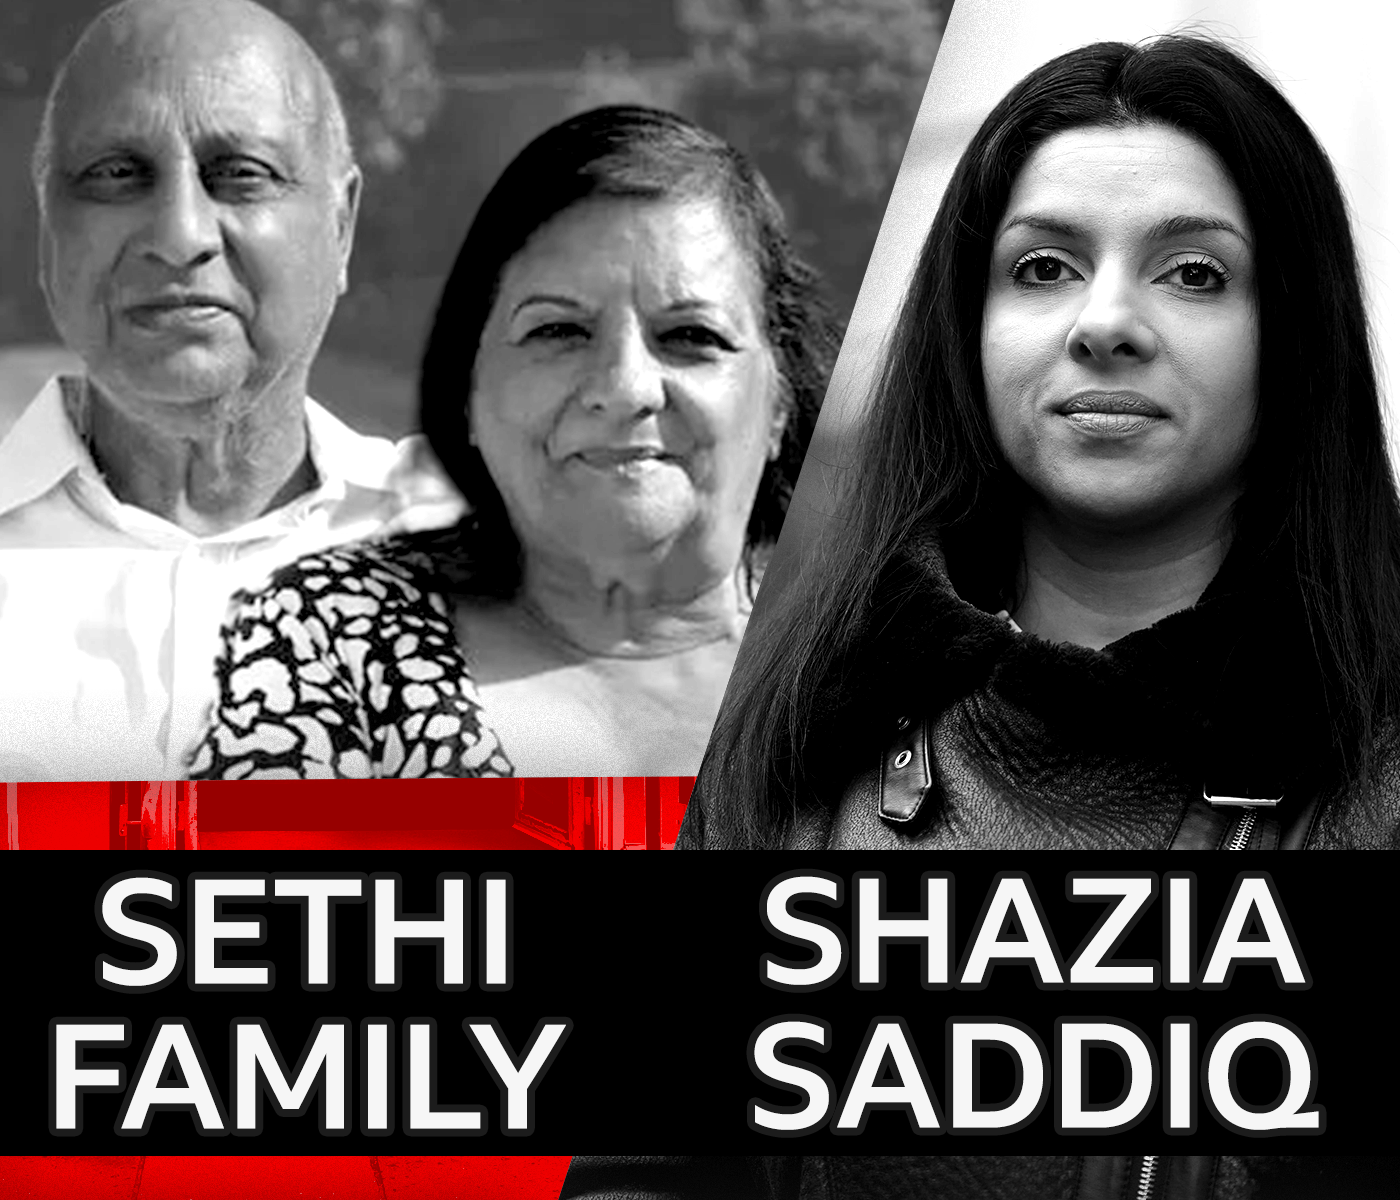 Sethi family and Shazia Saddiq placed on image together